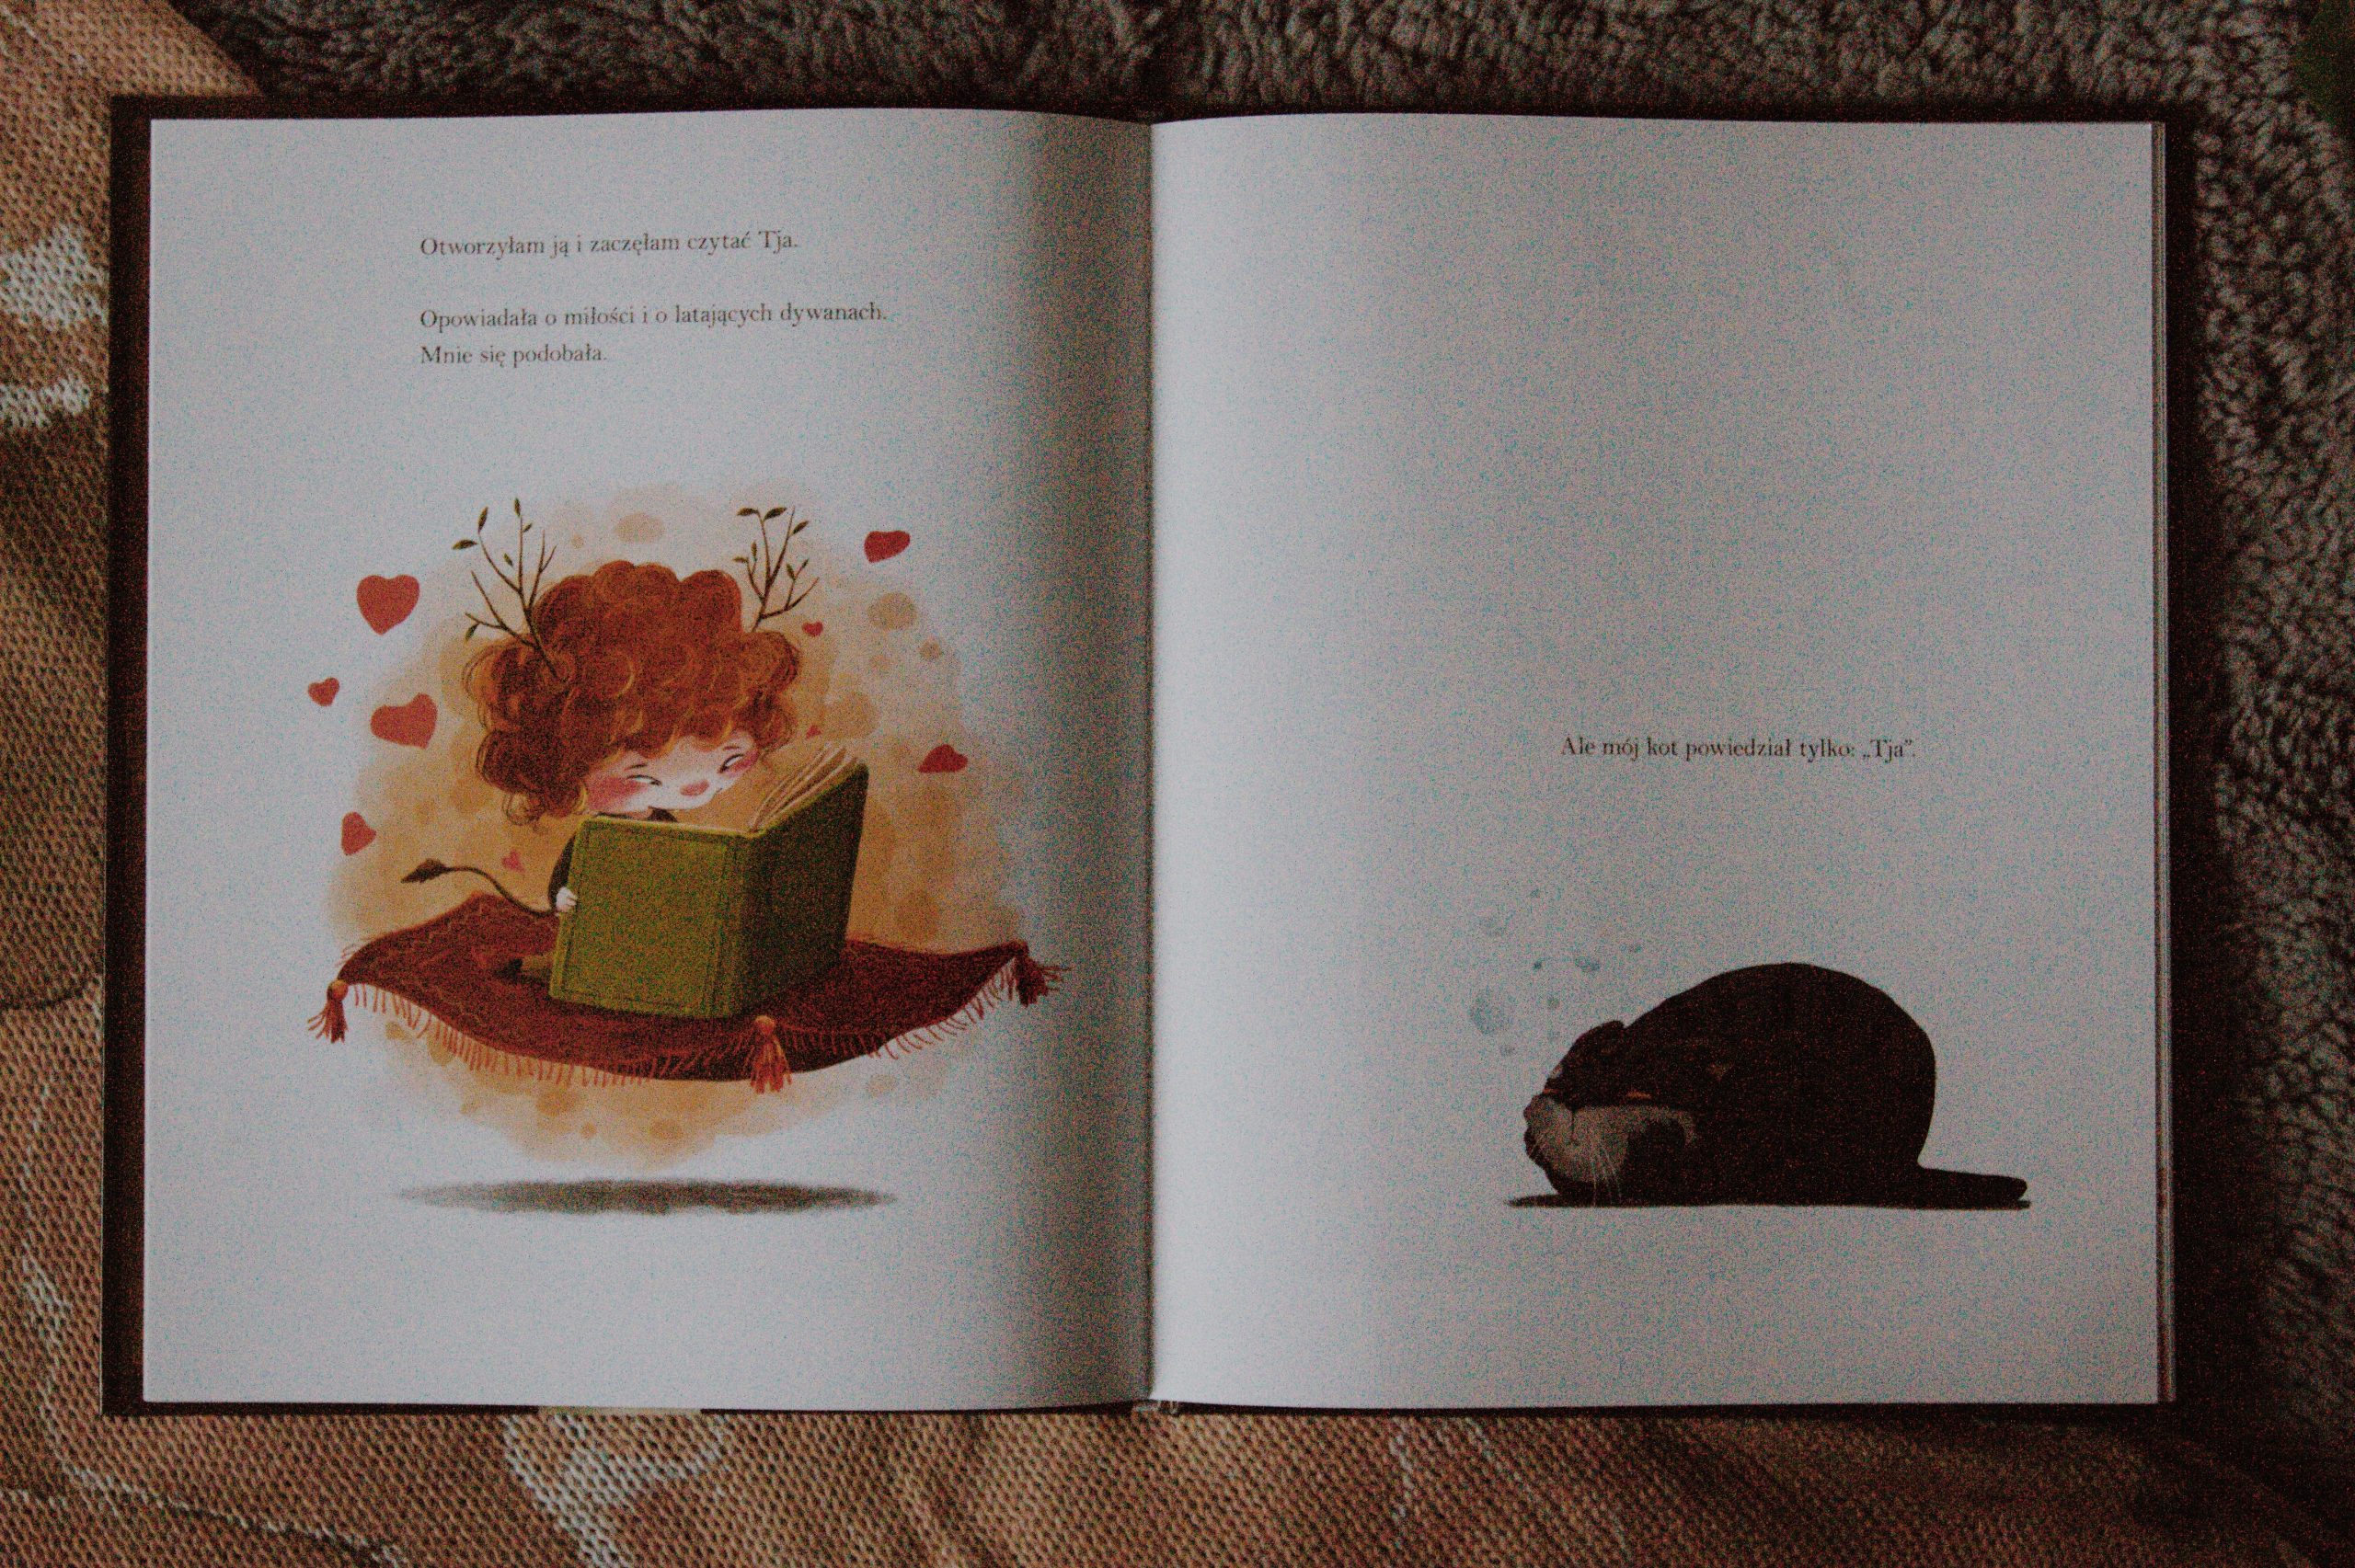 środek książki Biblioteka Astrid autorstwa Martina Widmarka z ilustracjami Emilii Dziubak, po lewej stronie znajduje się na latającym dywanie rudowłosa dziewczynka czytająca książkę, po lewej znajduje się czarny kot